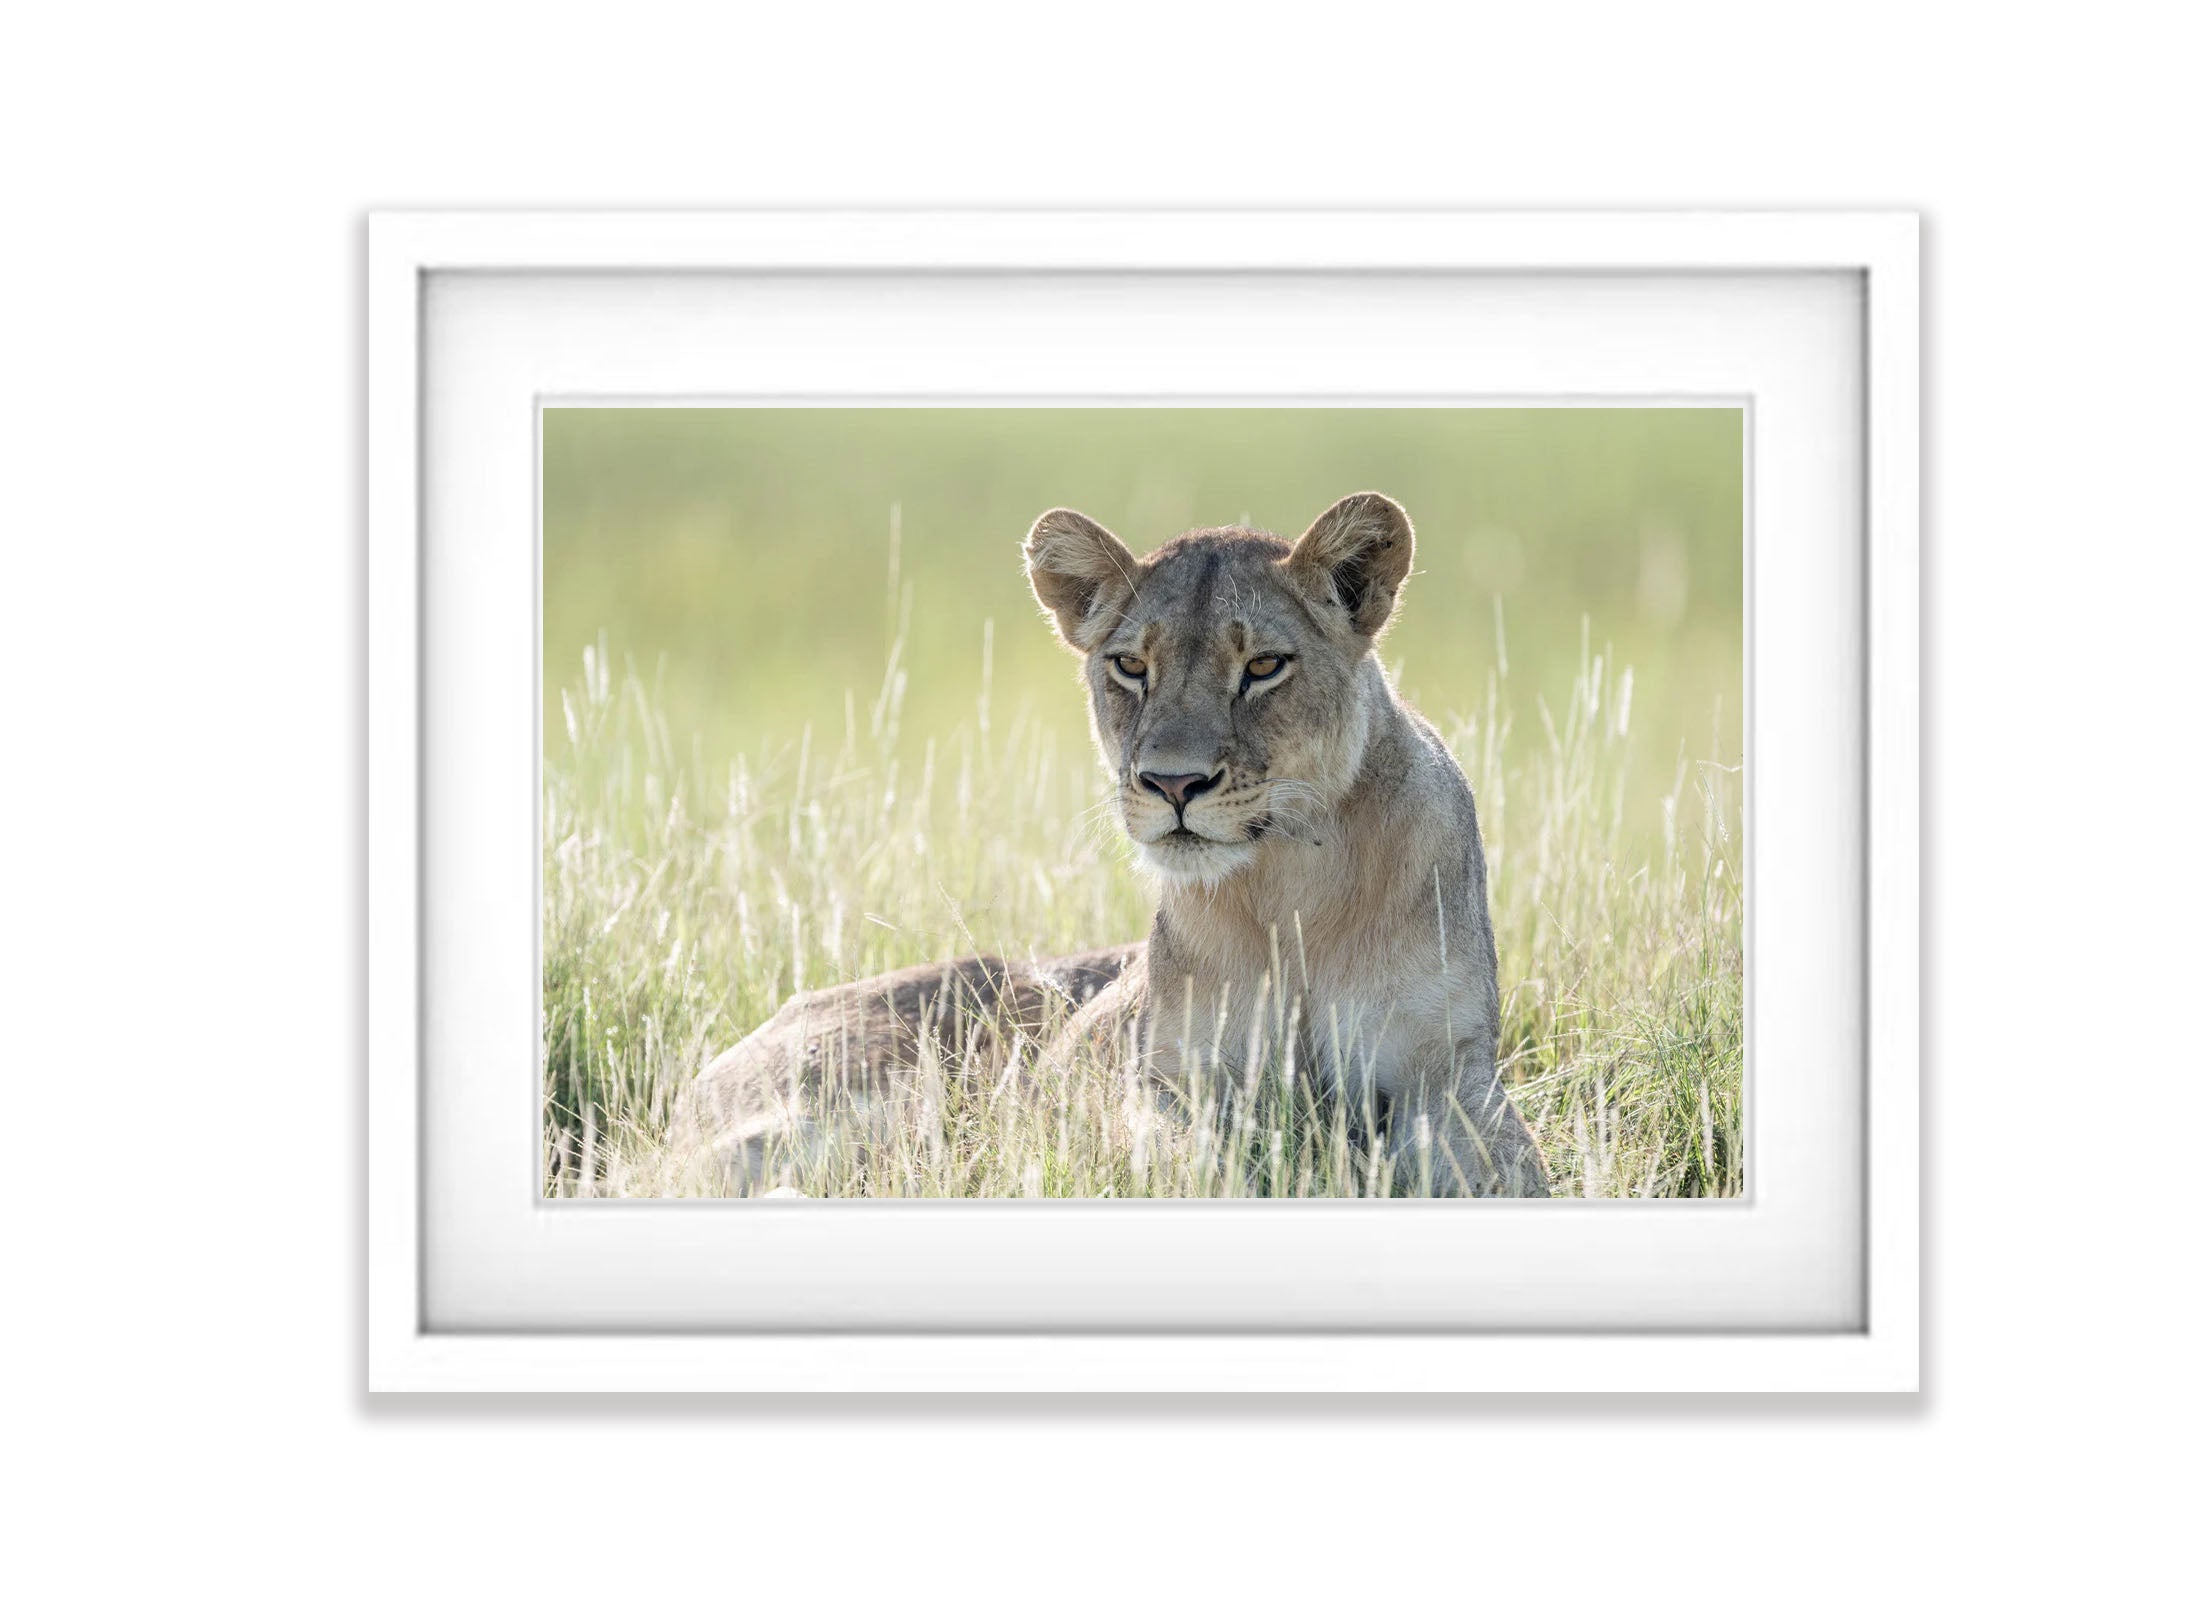 Lioness relaxing, Okavango Delta, Botswana